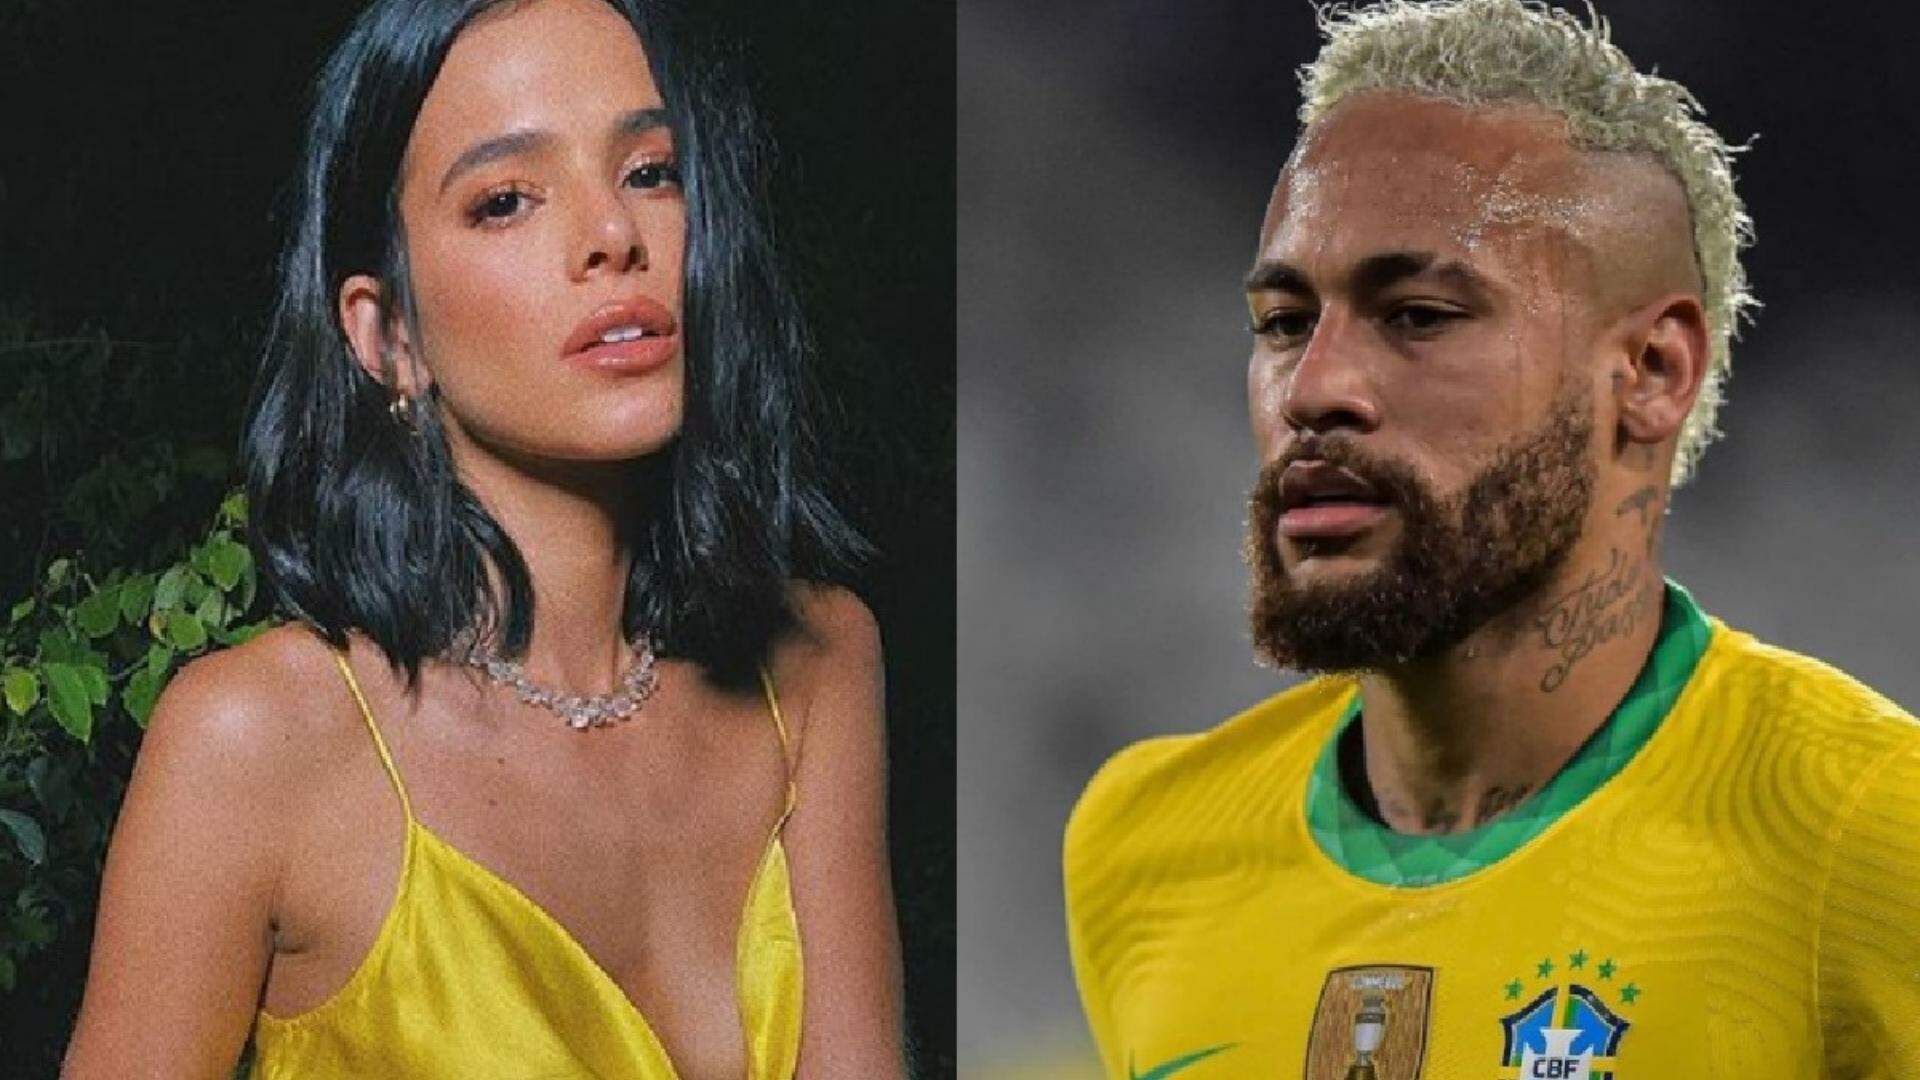 Após vídeo beijando ator viralizar, Bruna Marquezine curte suposta indireta sobre Neymar